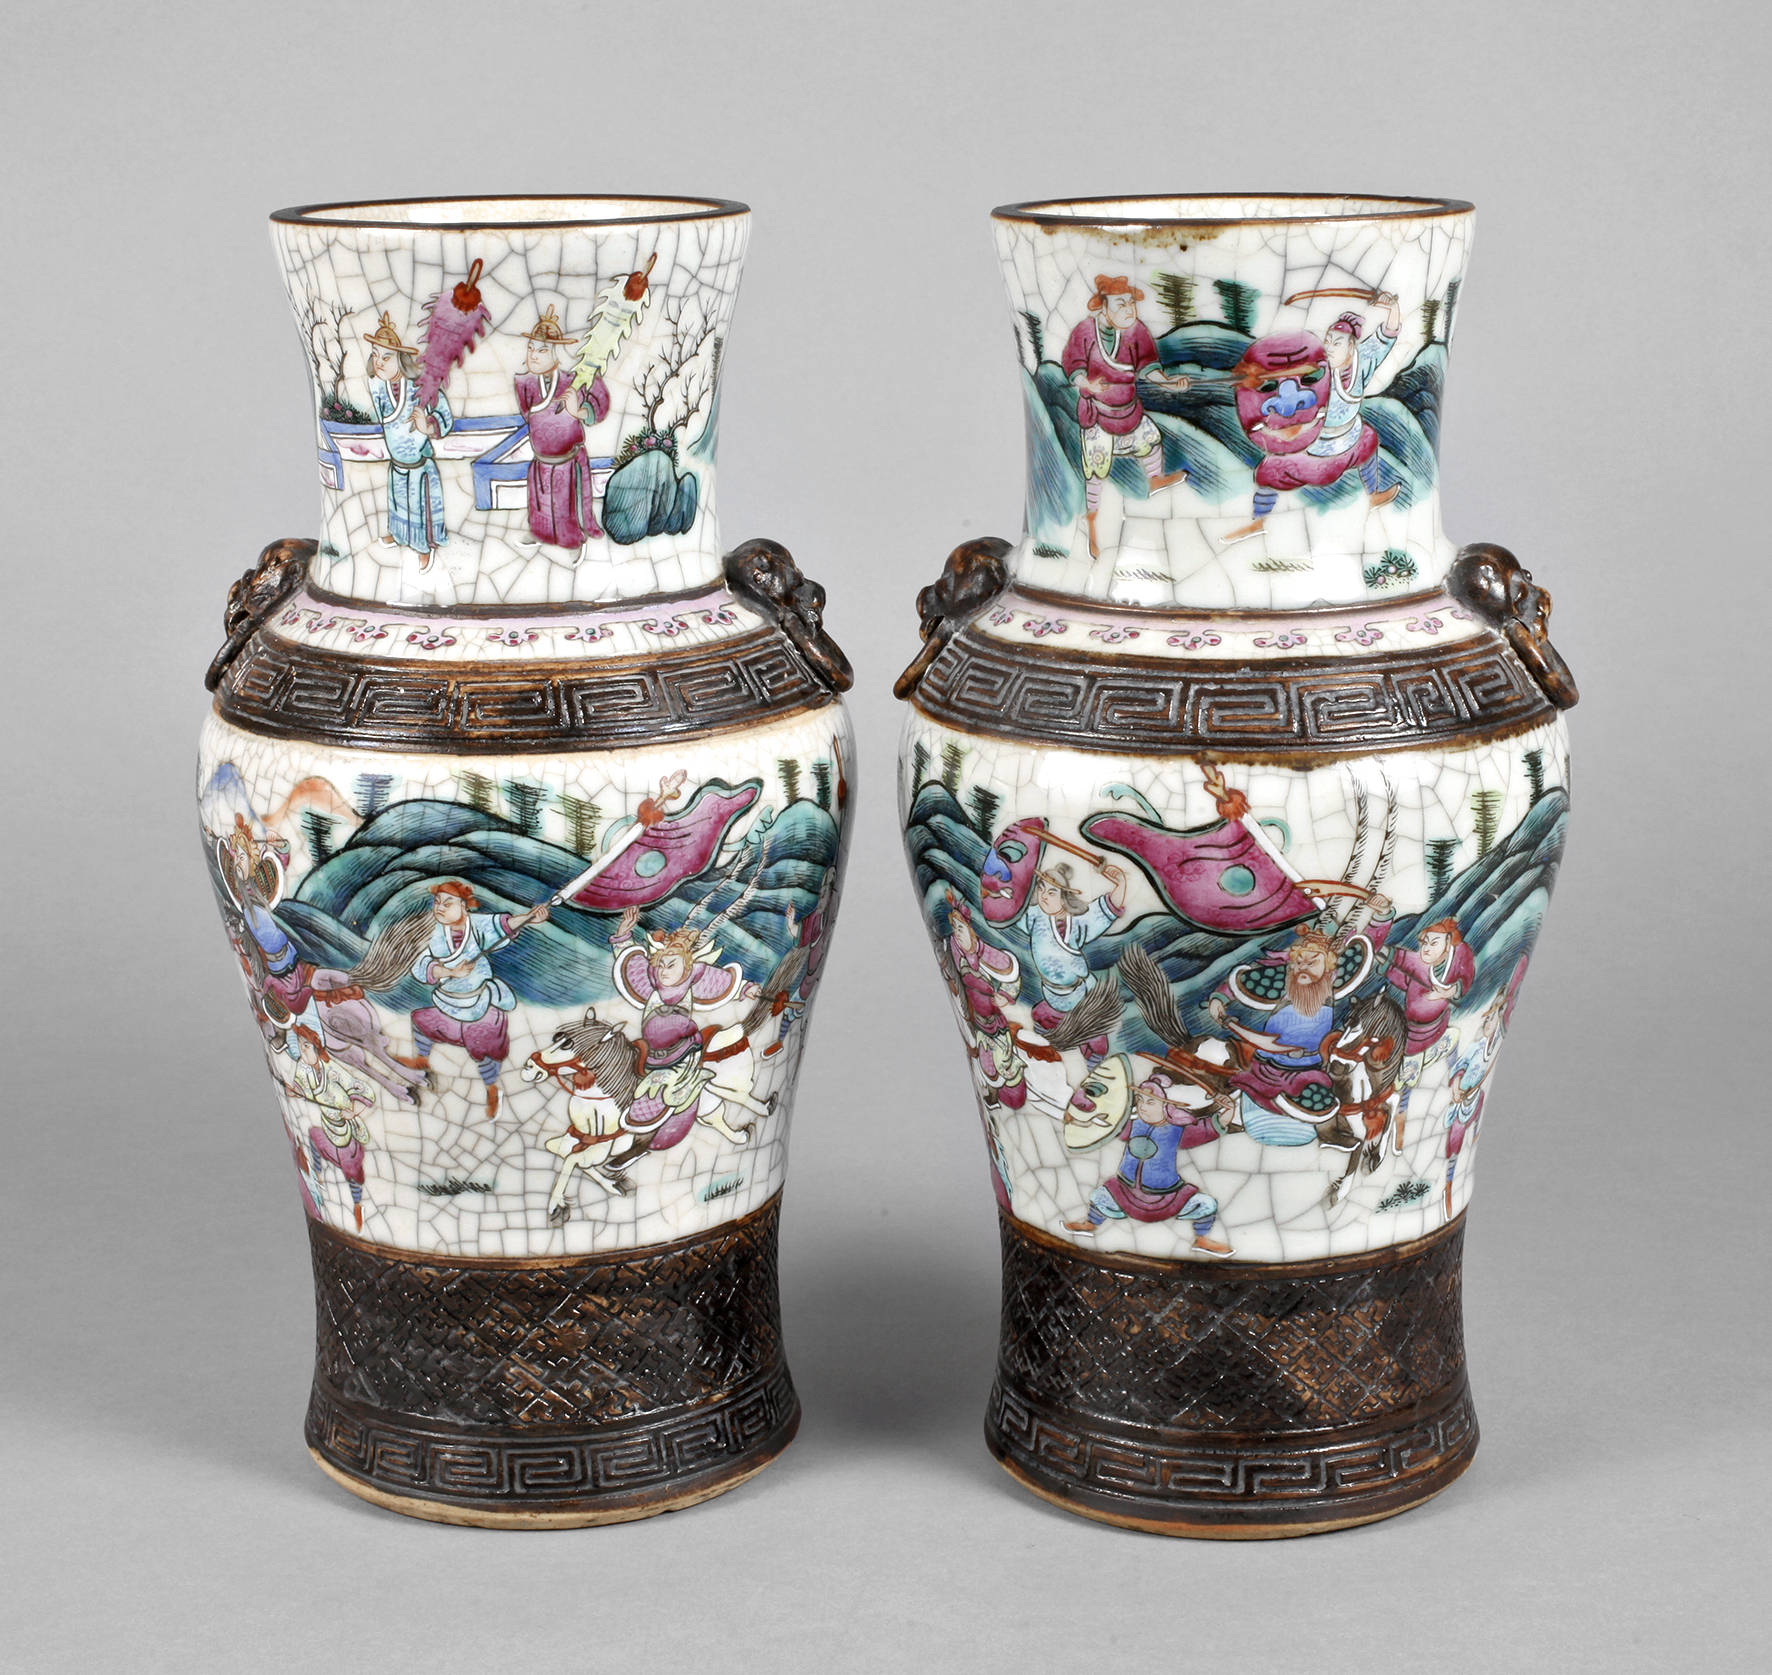 Paar Vasen China